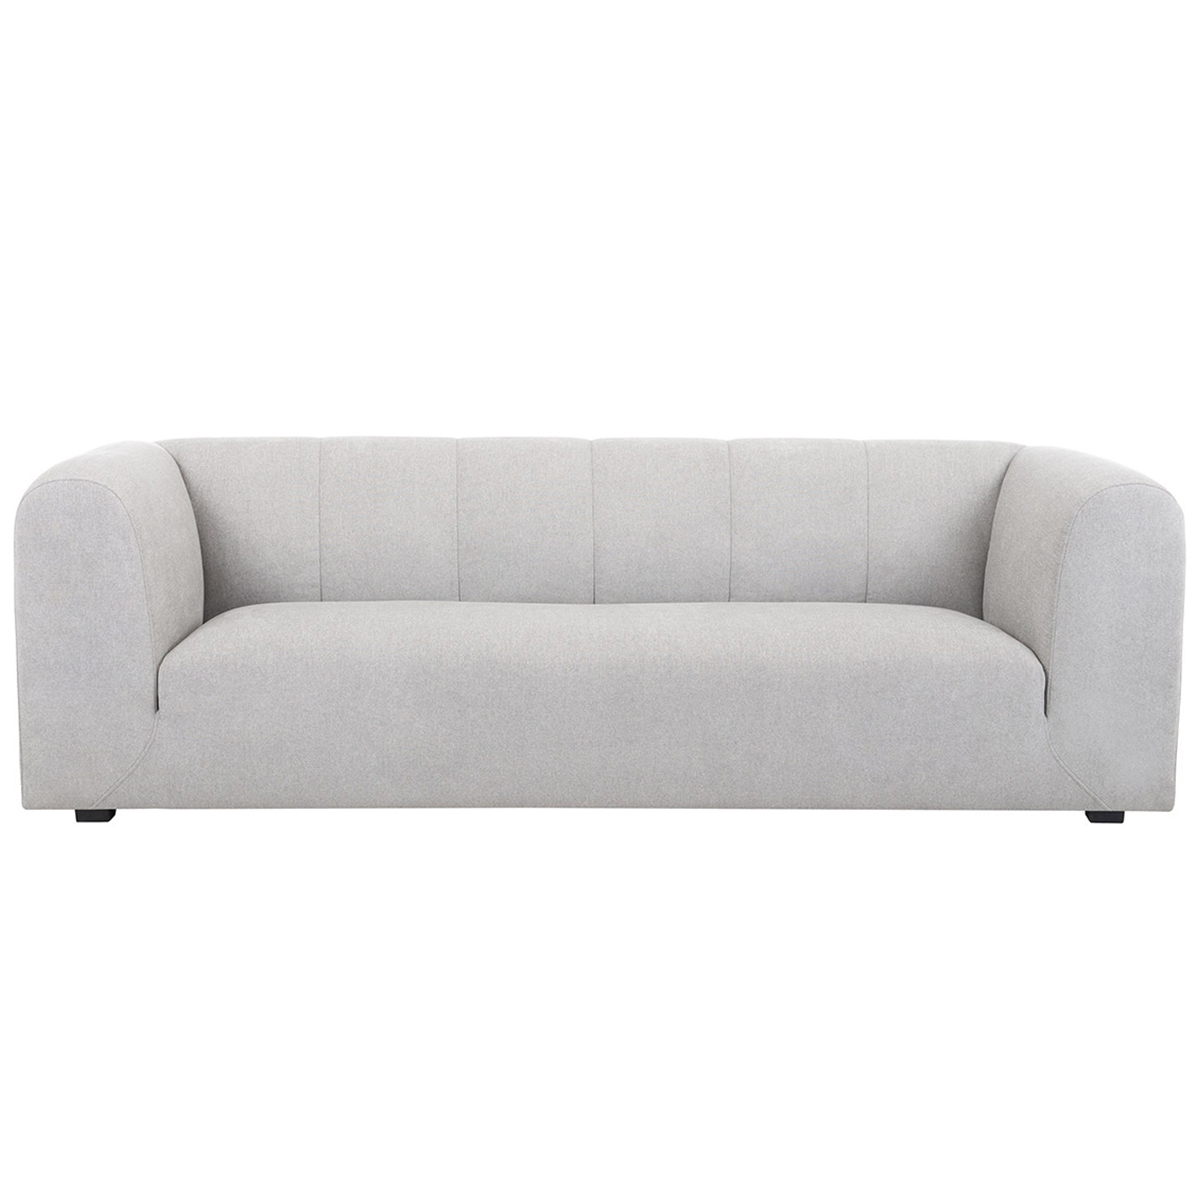 Canapé design en tissu gris 4 places OLIVEIRO vue1